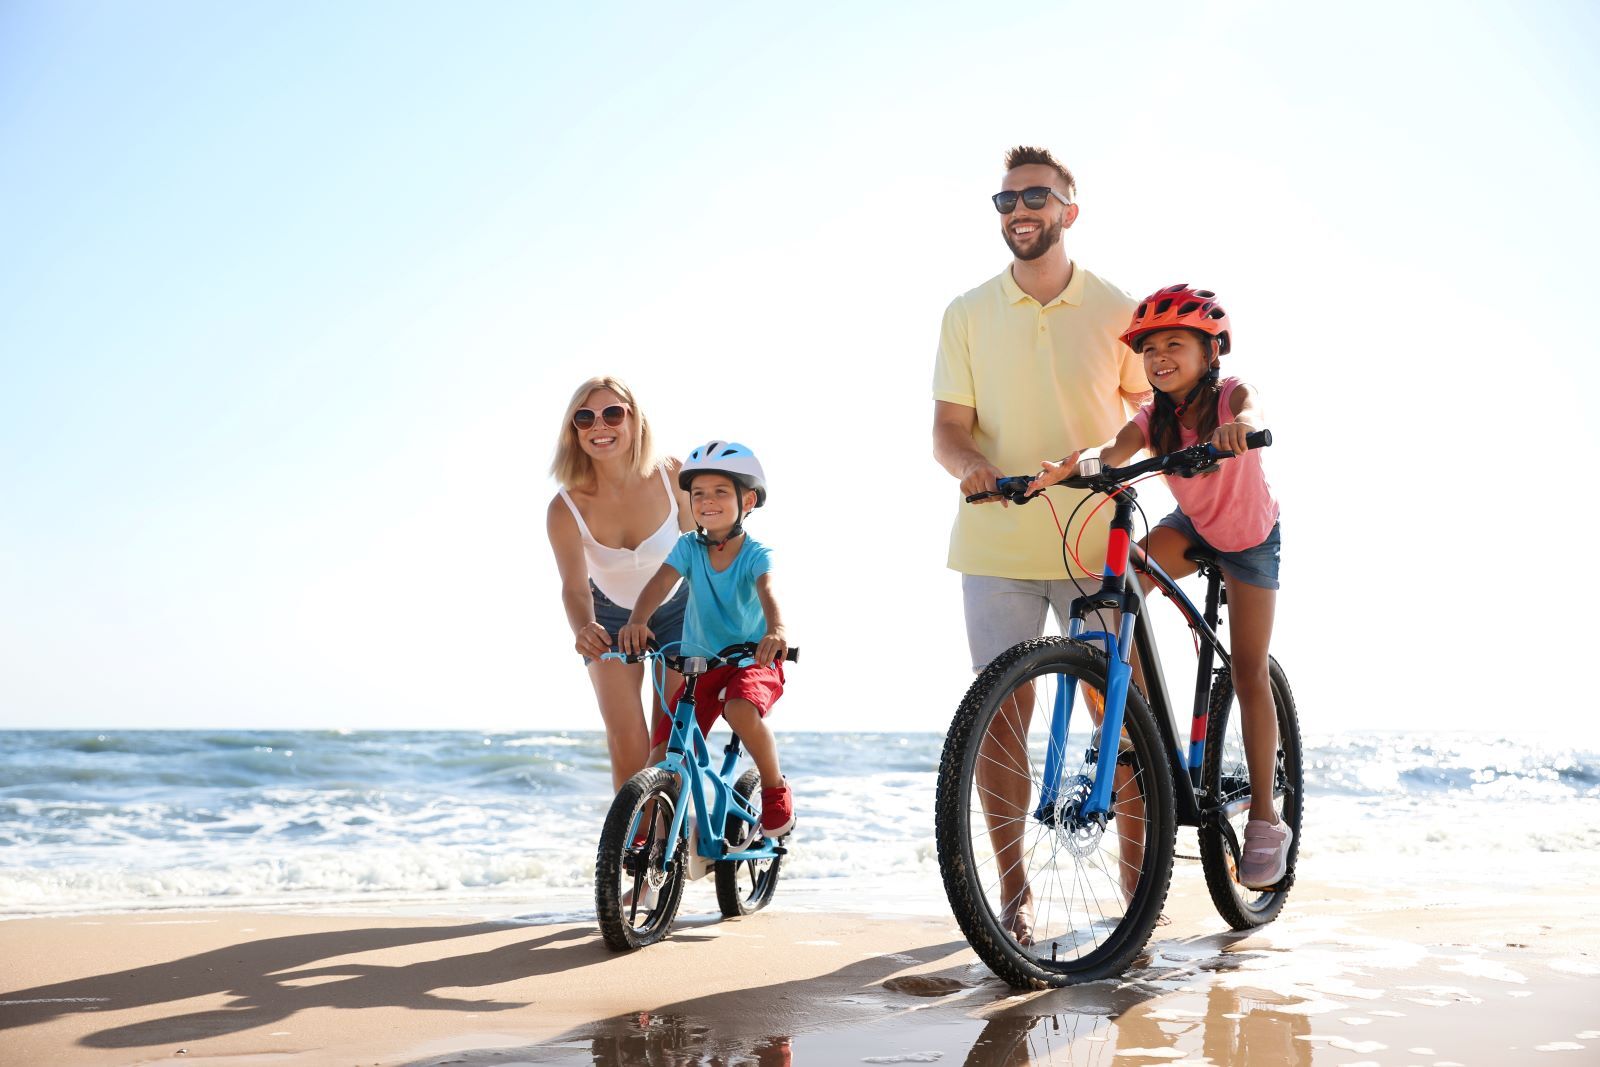 Family of four biking on beach